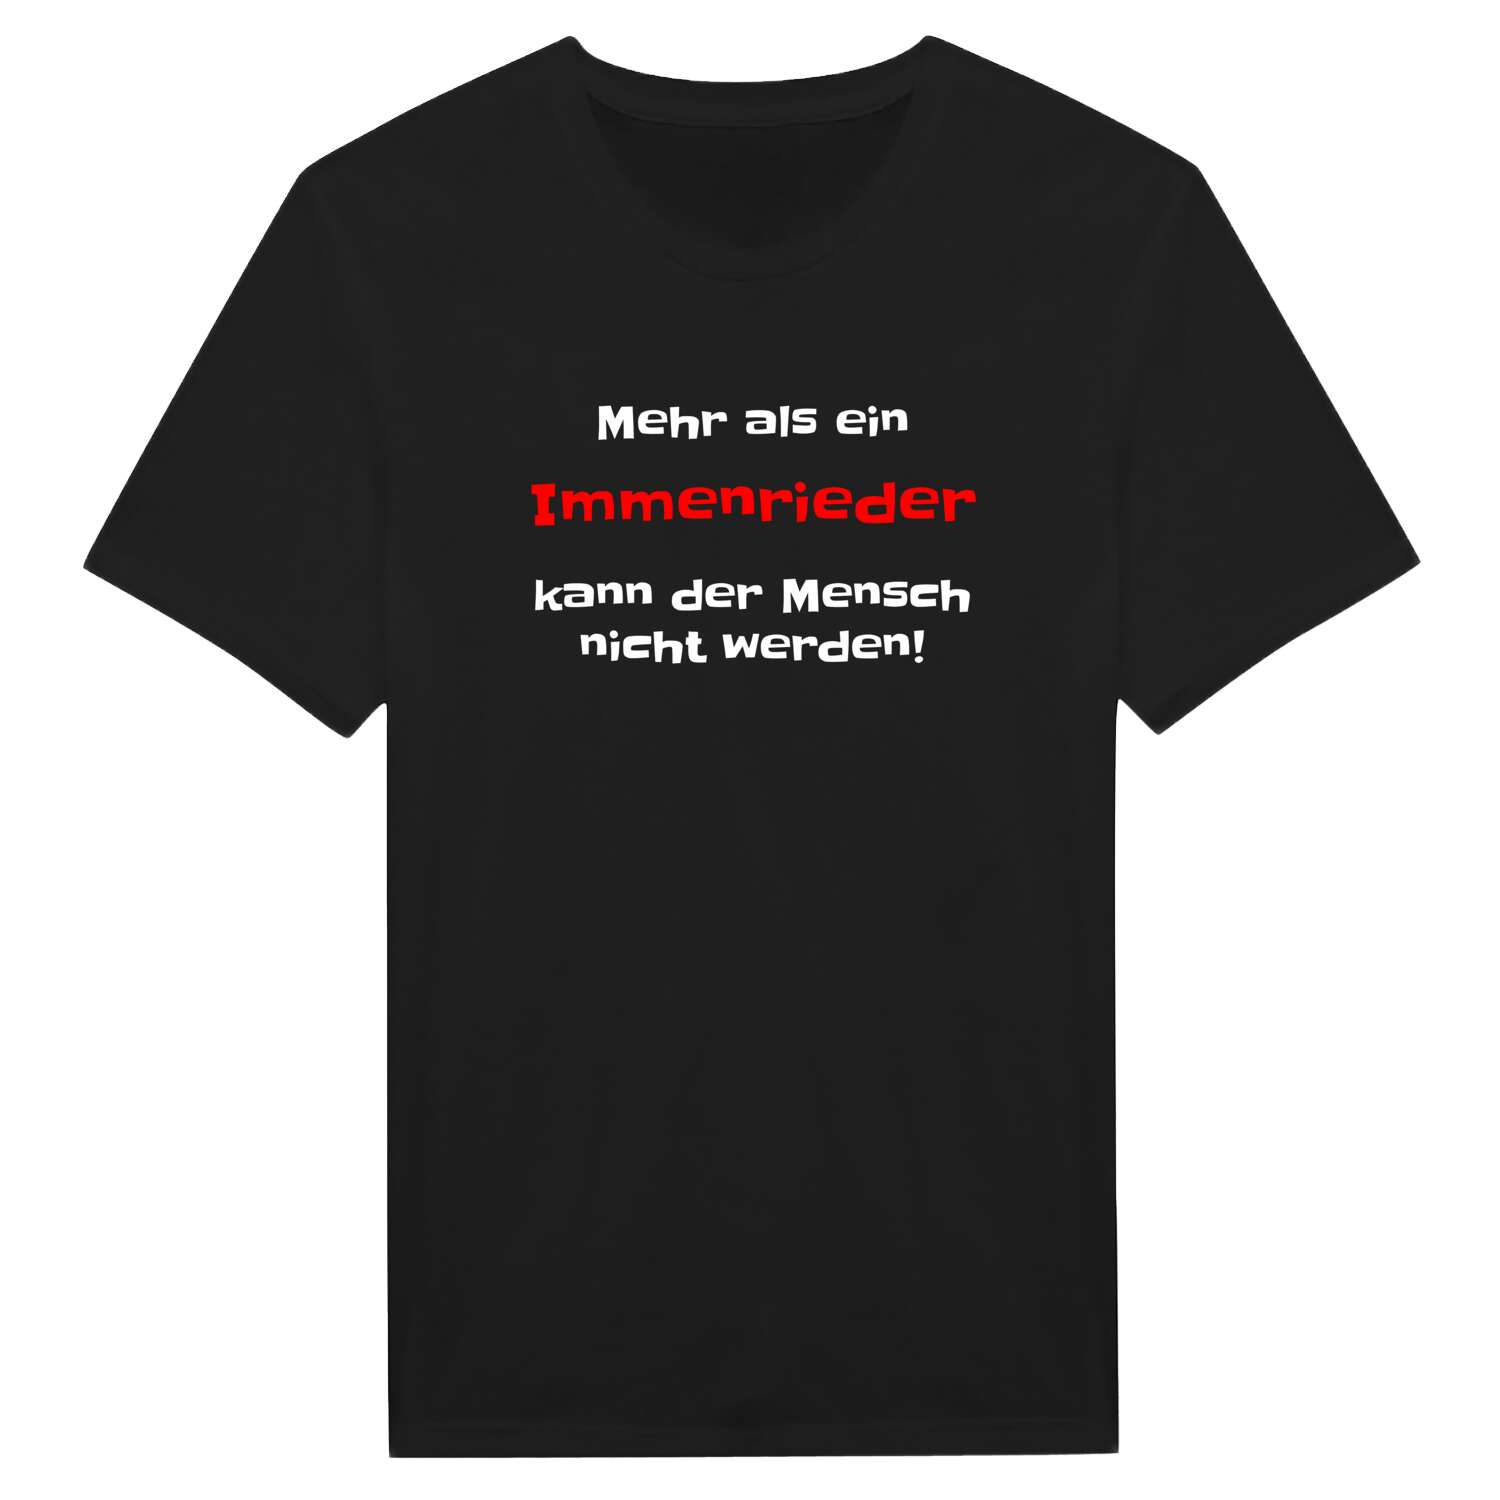 Immenried T-Shirt »Mehr als ein«